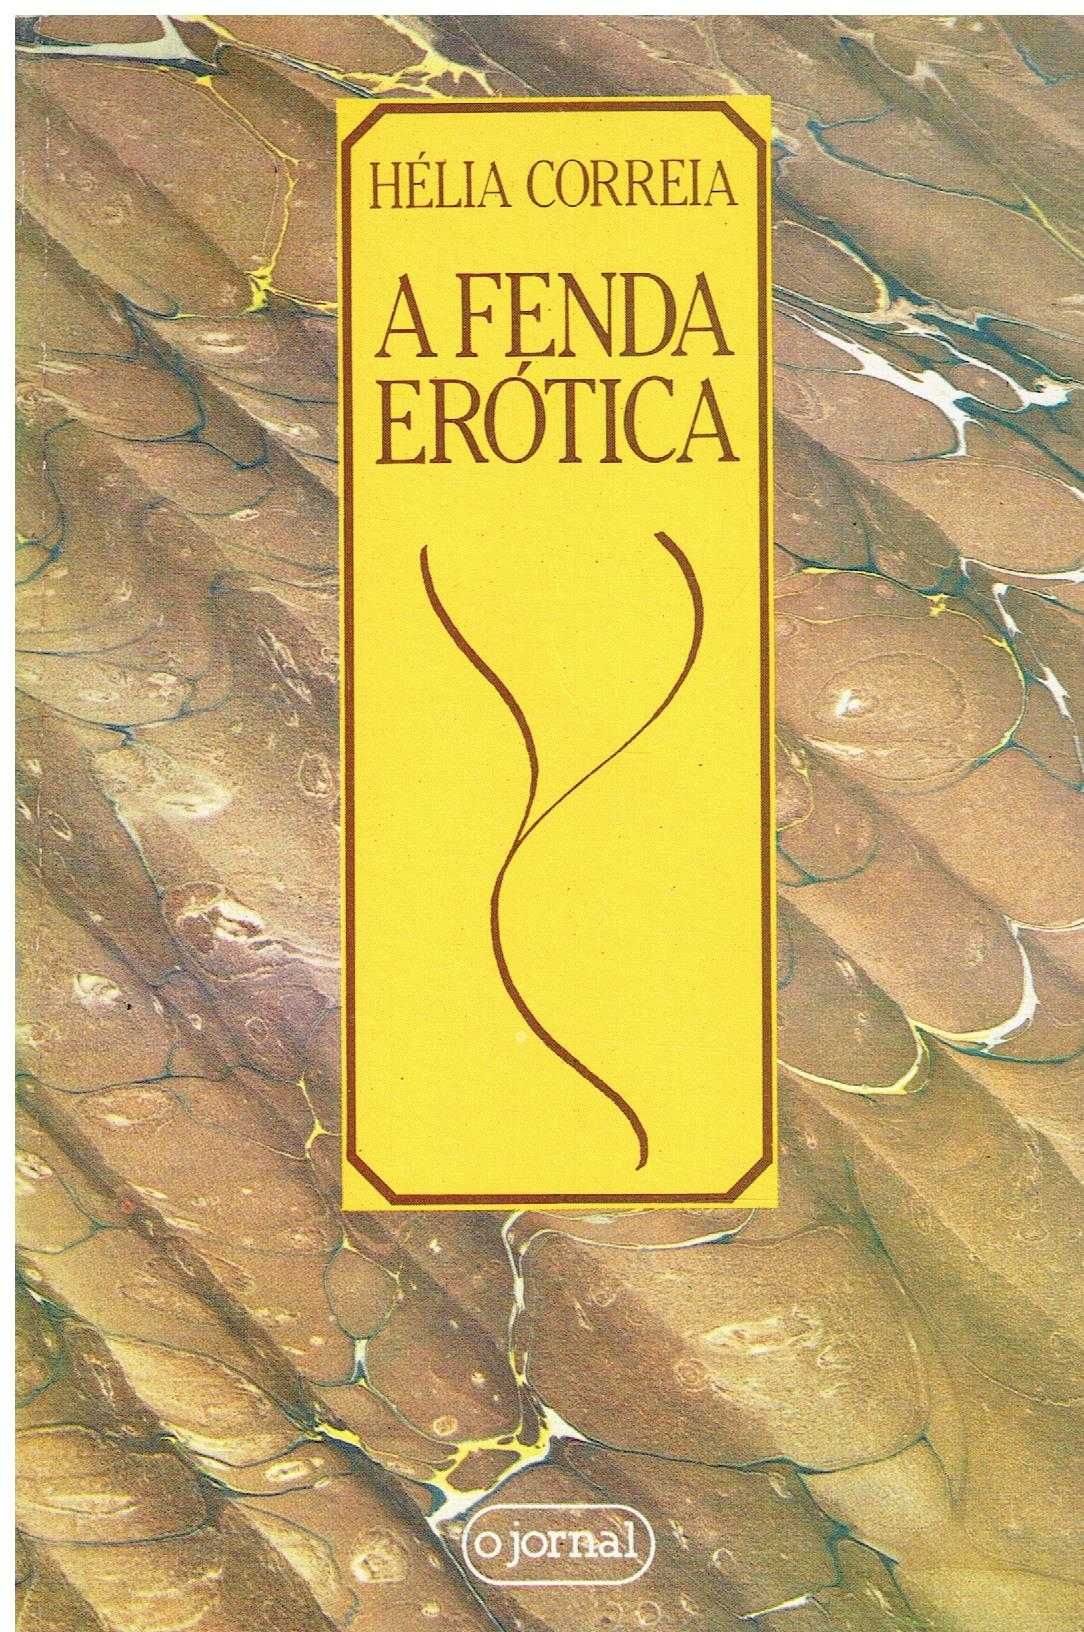 5434

A Fenda Erótica 
de Hélia Correia